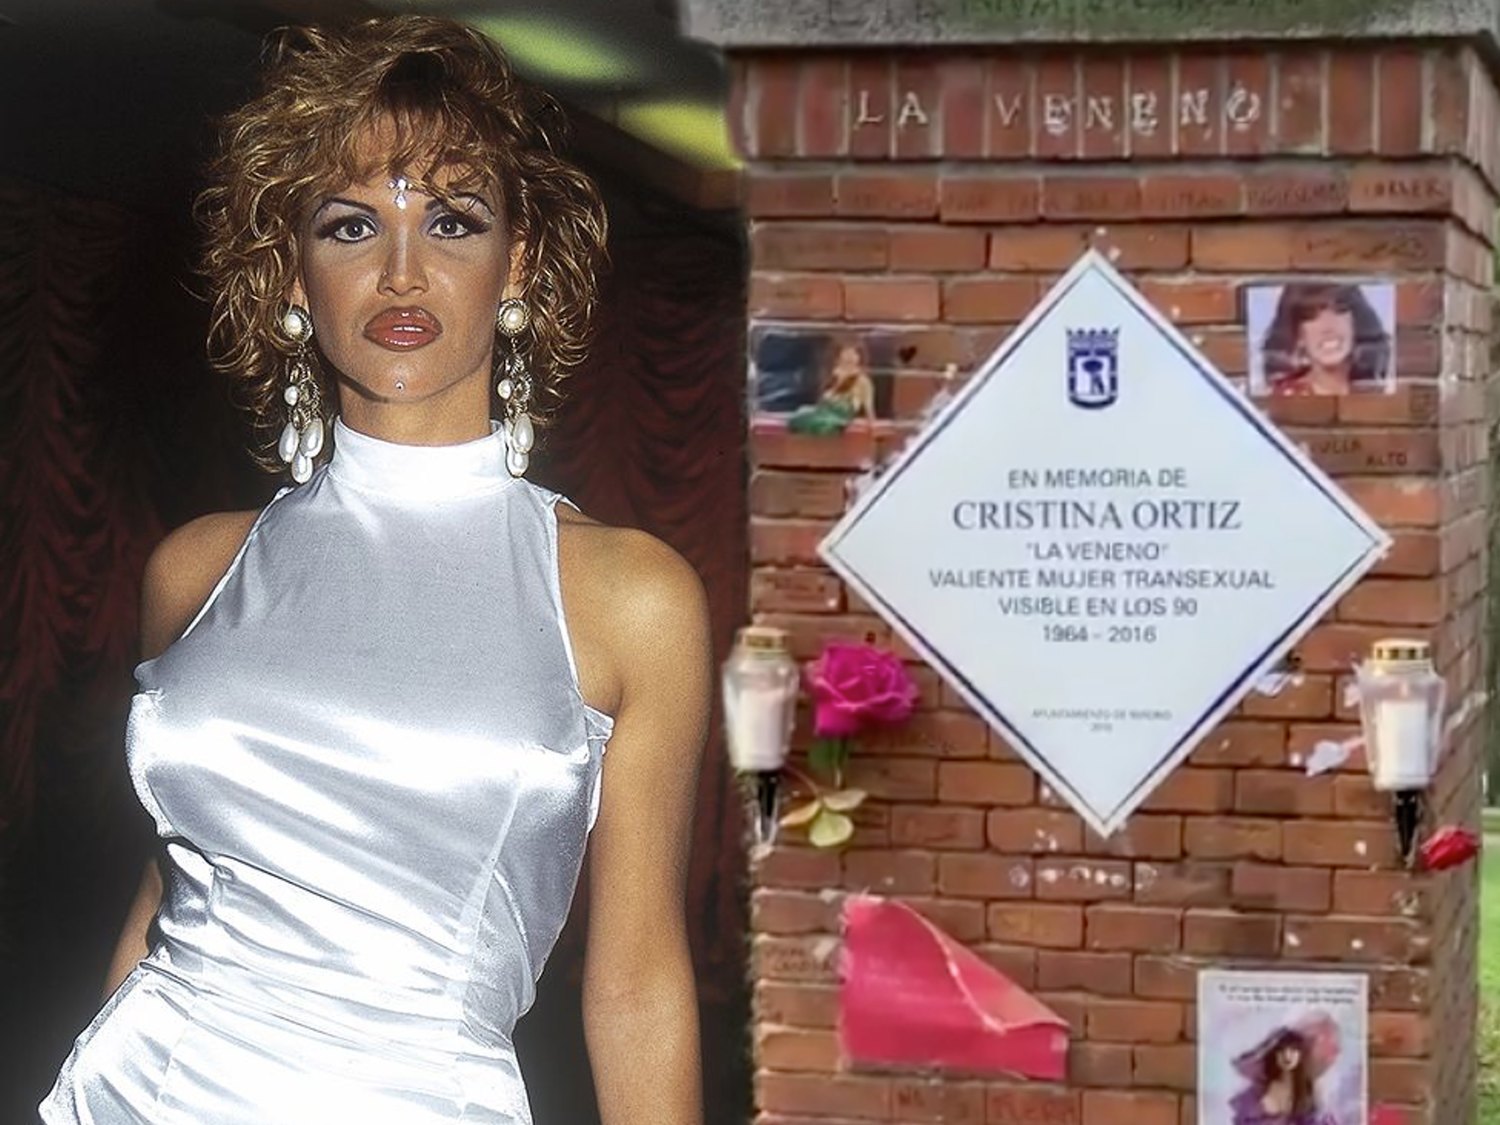 Reponen, por fin, la placa en homenaje a Cristina Ortiz, La Veneno, en el Parque del Oeste de Madrid